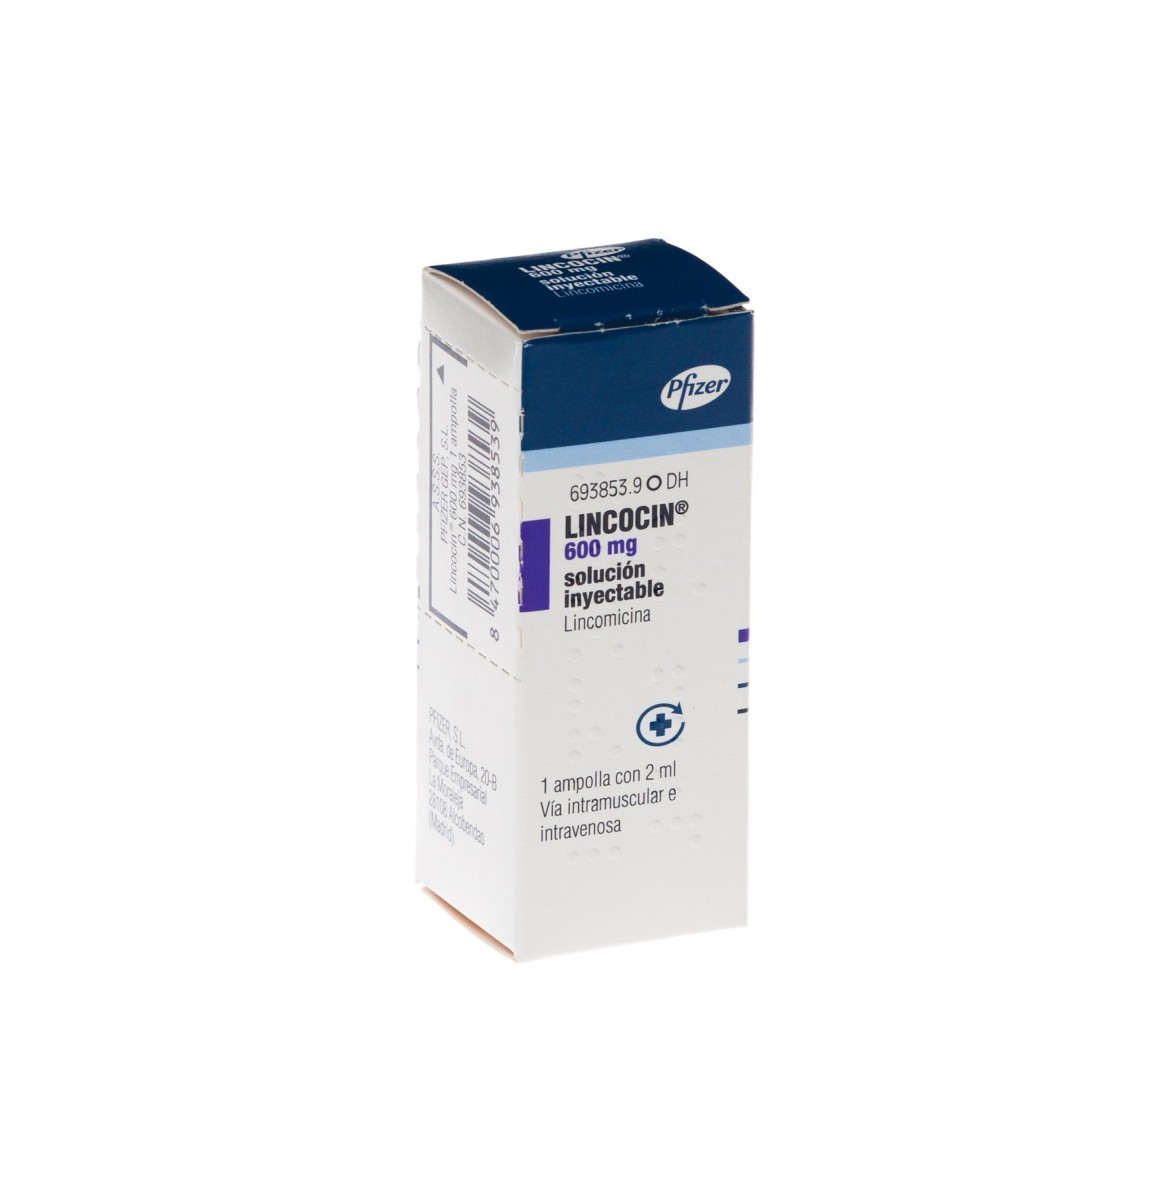 LINCOCIN 600 mg INYECTABLE, 1 vial de 2 ml fotografía del envase.